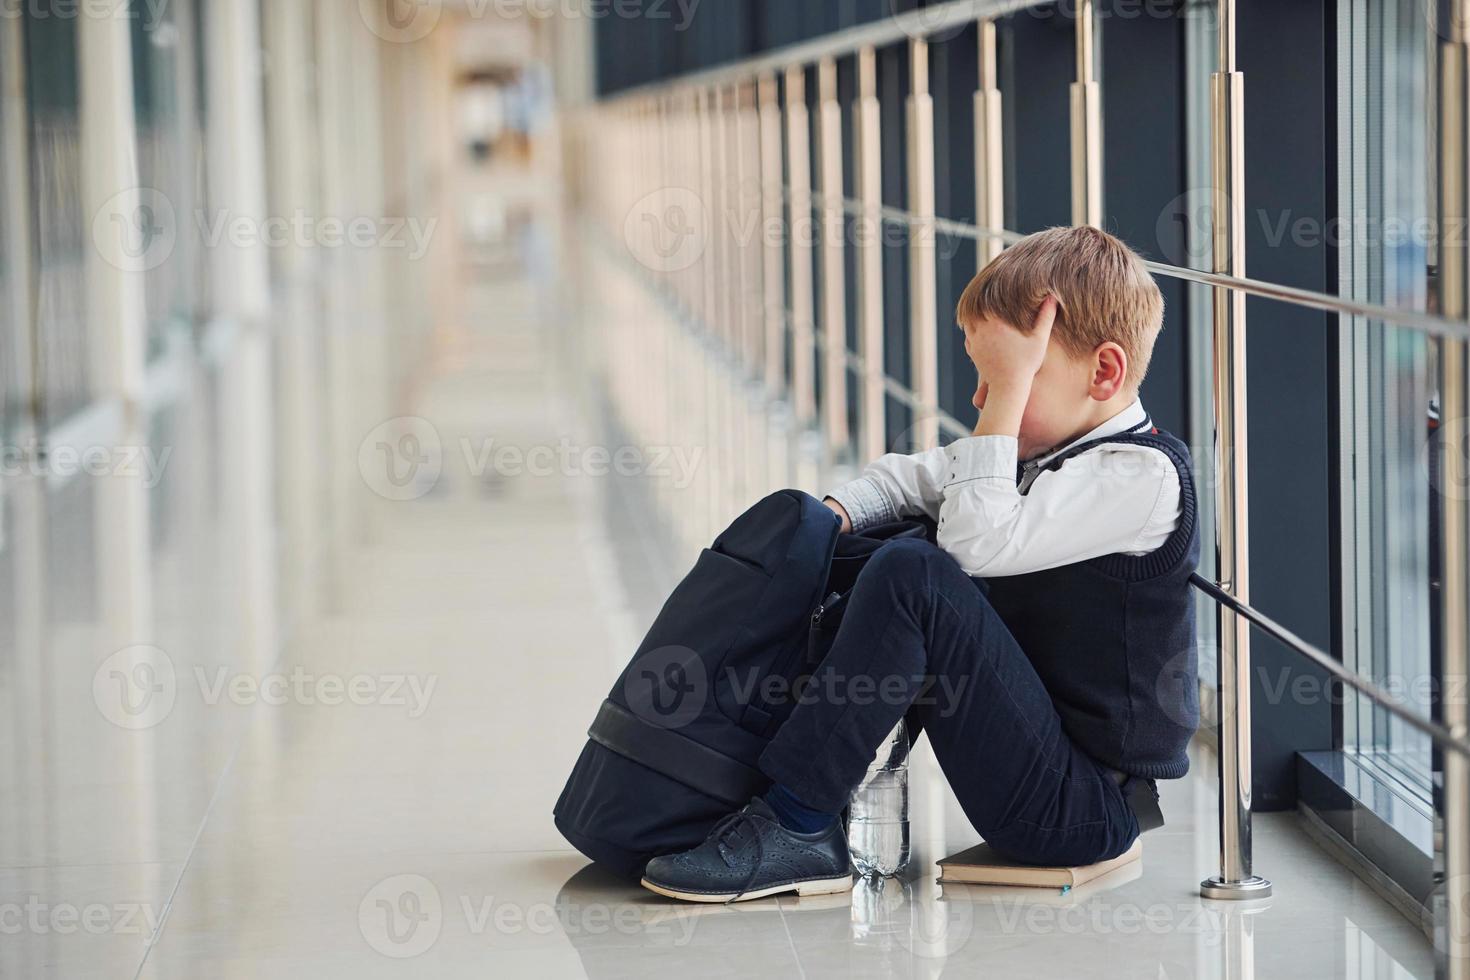 Boy in uniform sitting alone with feeling sad at school ...